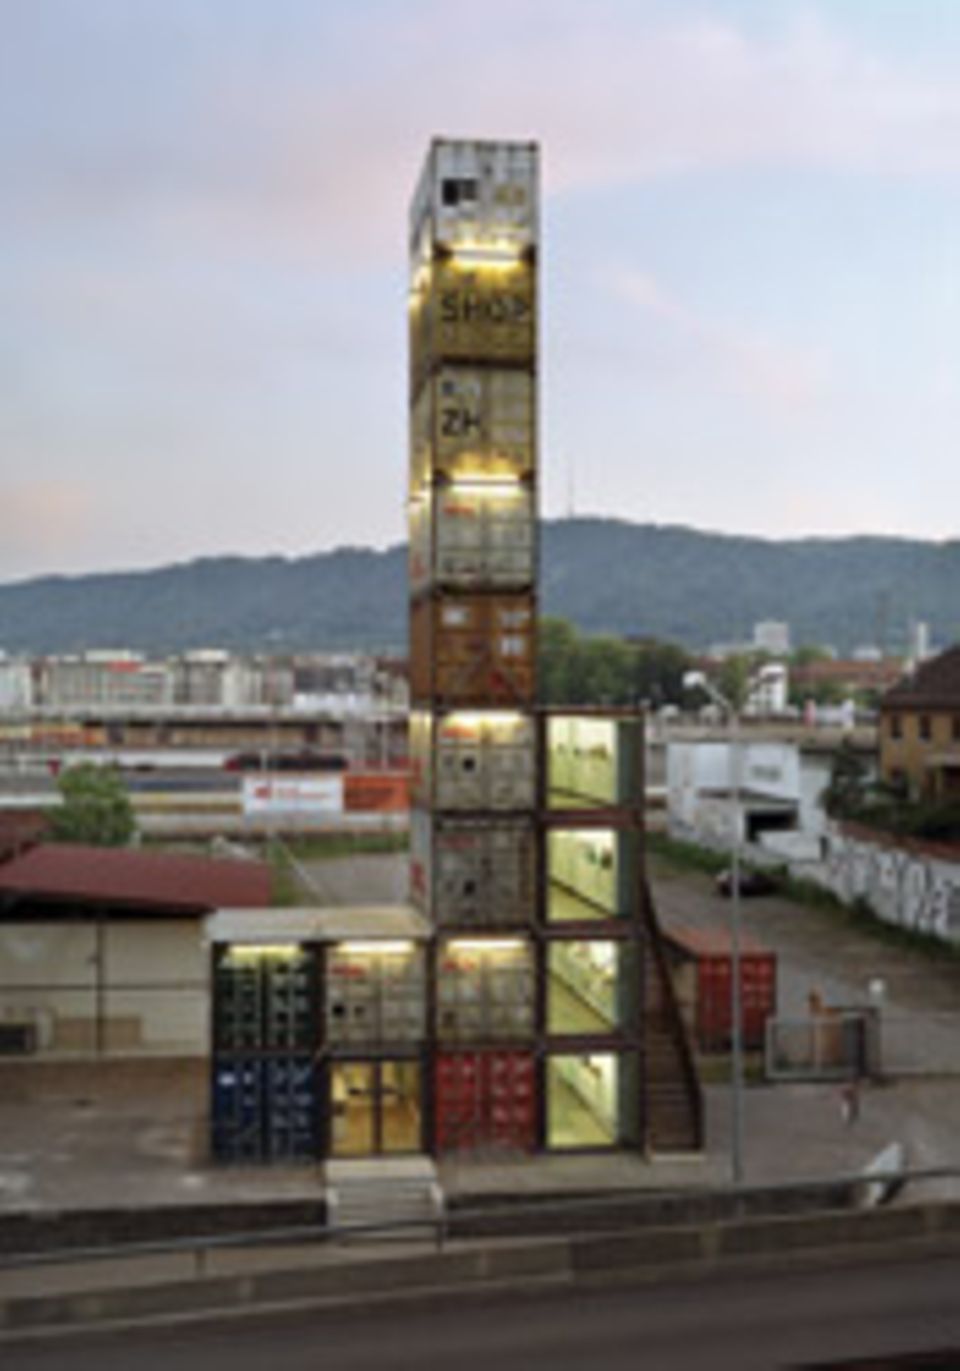 Der Freitag-Shop in Zürich besteht aus alten Containern